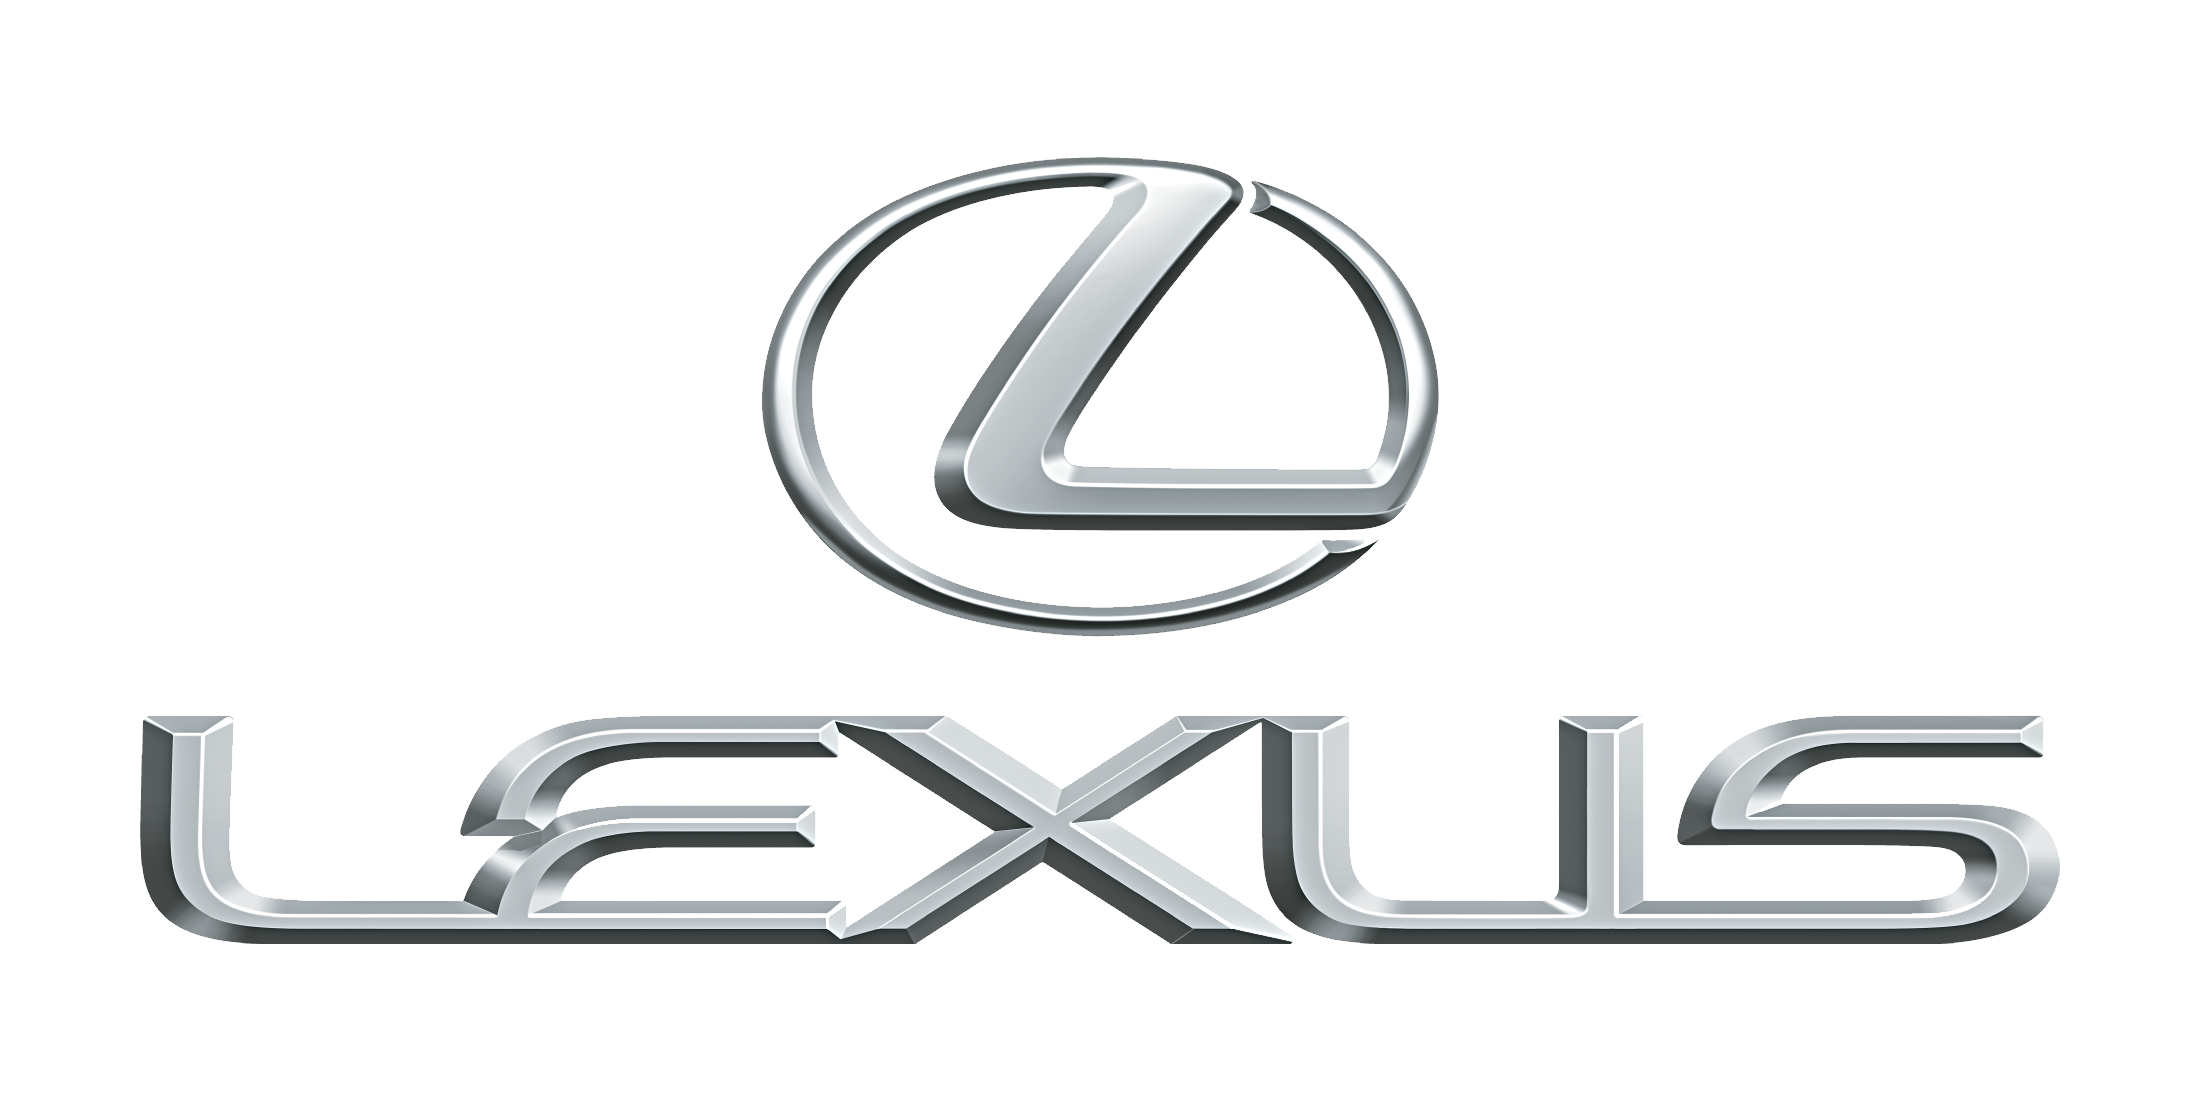 Brauchen Sie das EG-Übereinstimmungsbescheinigung CoC Lexus